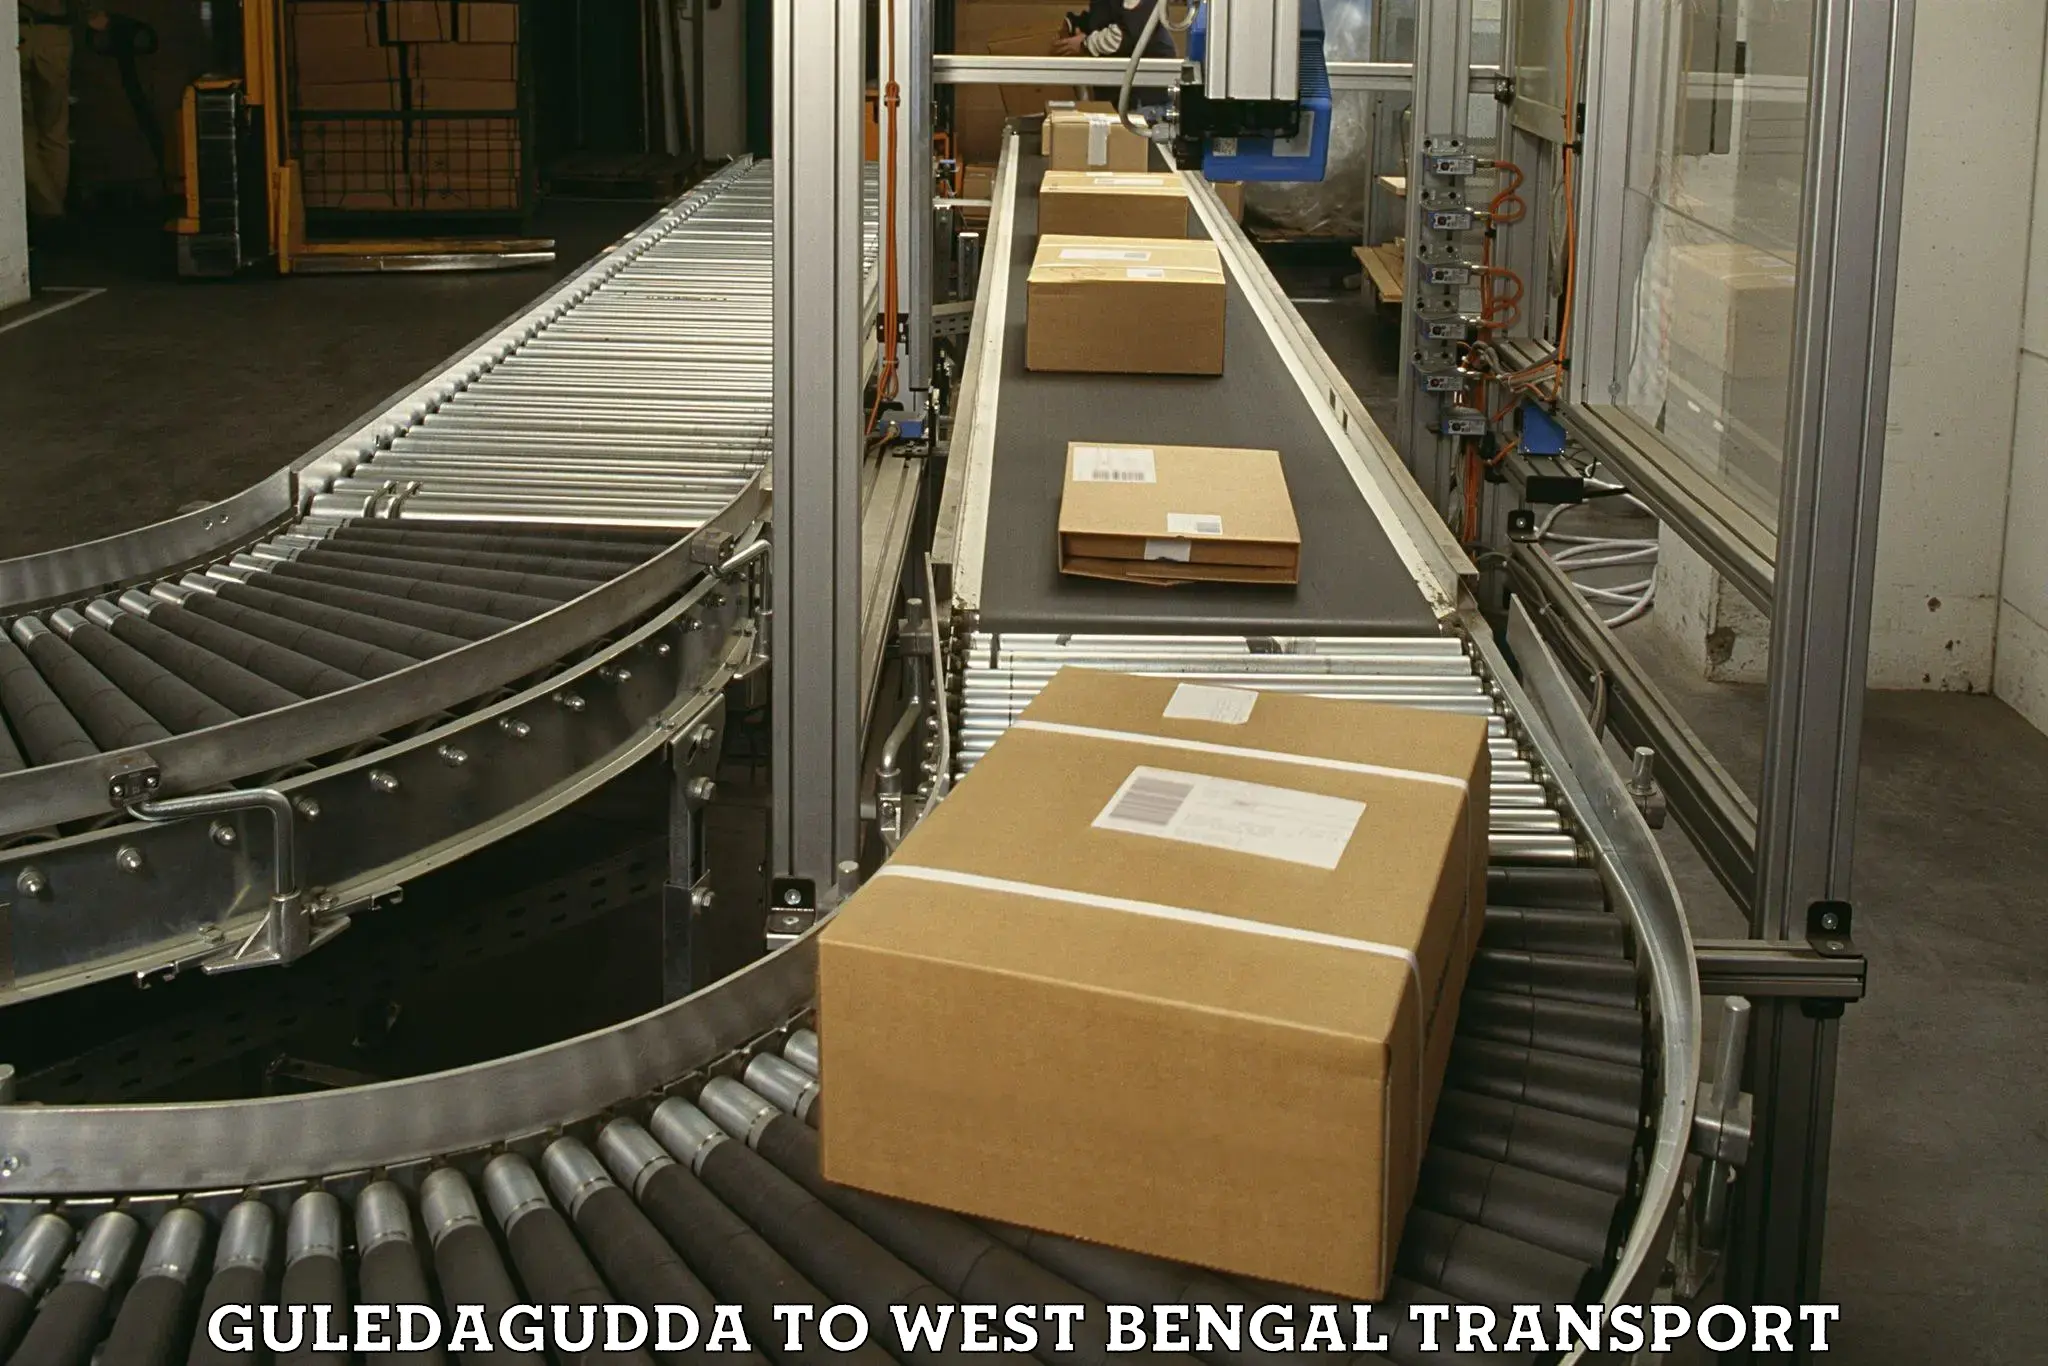 Delivery service Guledagudda to North 24 Parganas